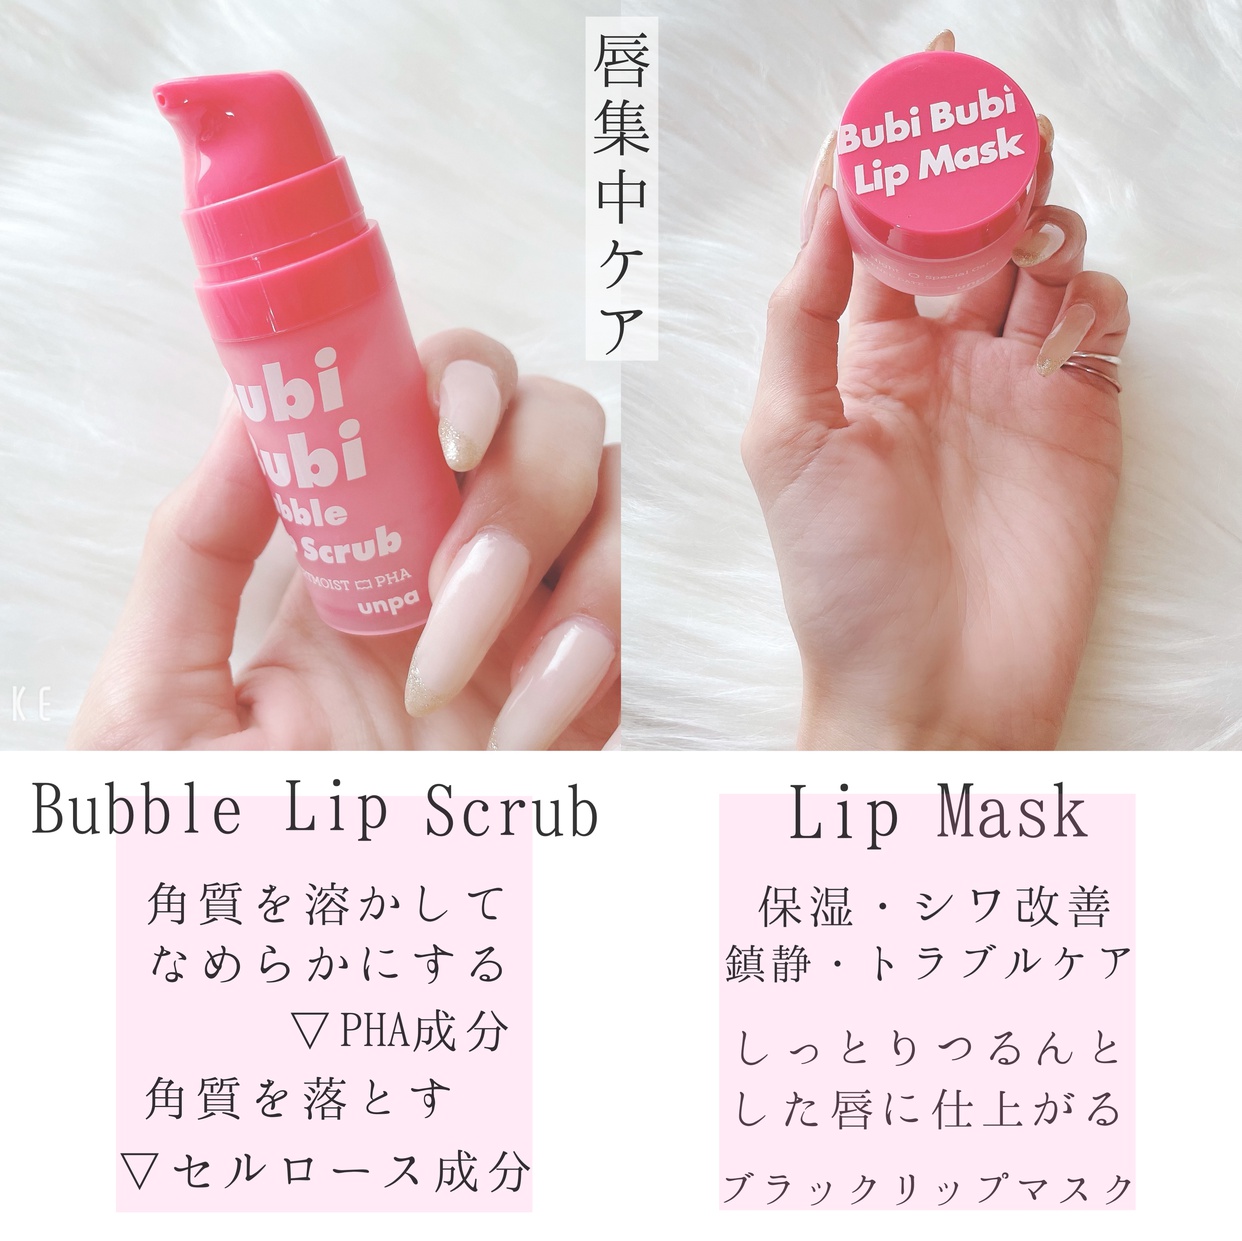 unpa.Cosmetics(オンパコスメティック)ブビブビ リップスクラブを使ったshiroさんのクチコミ画像3